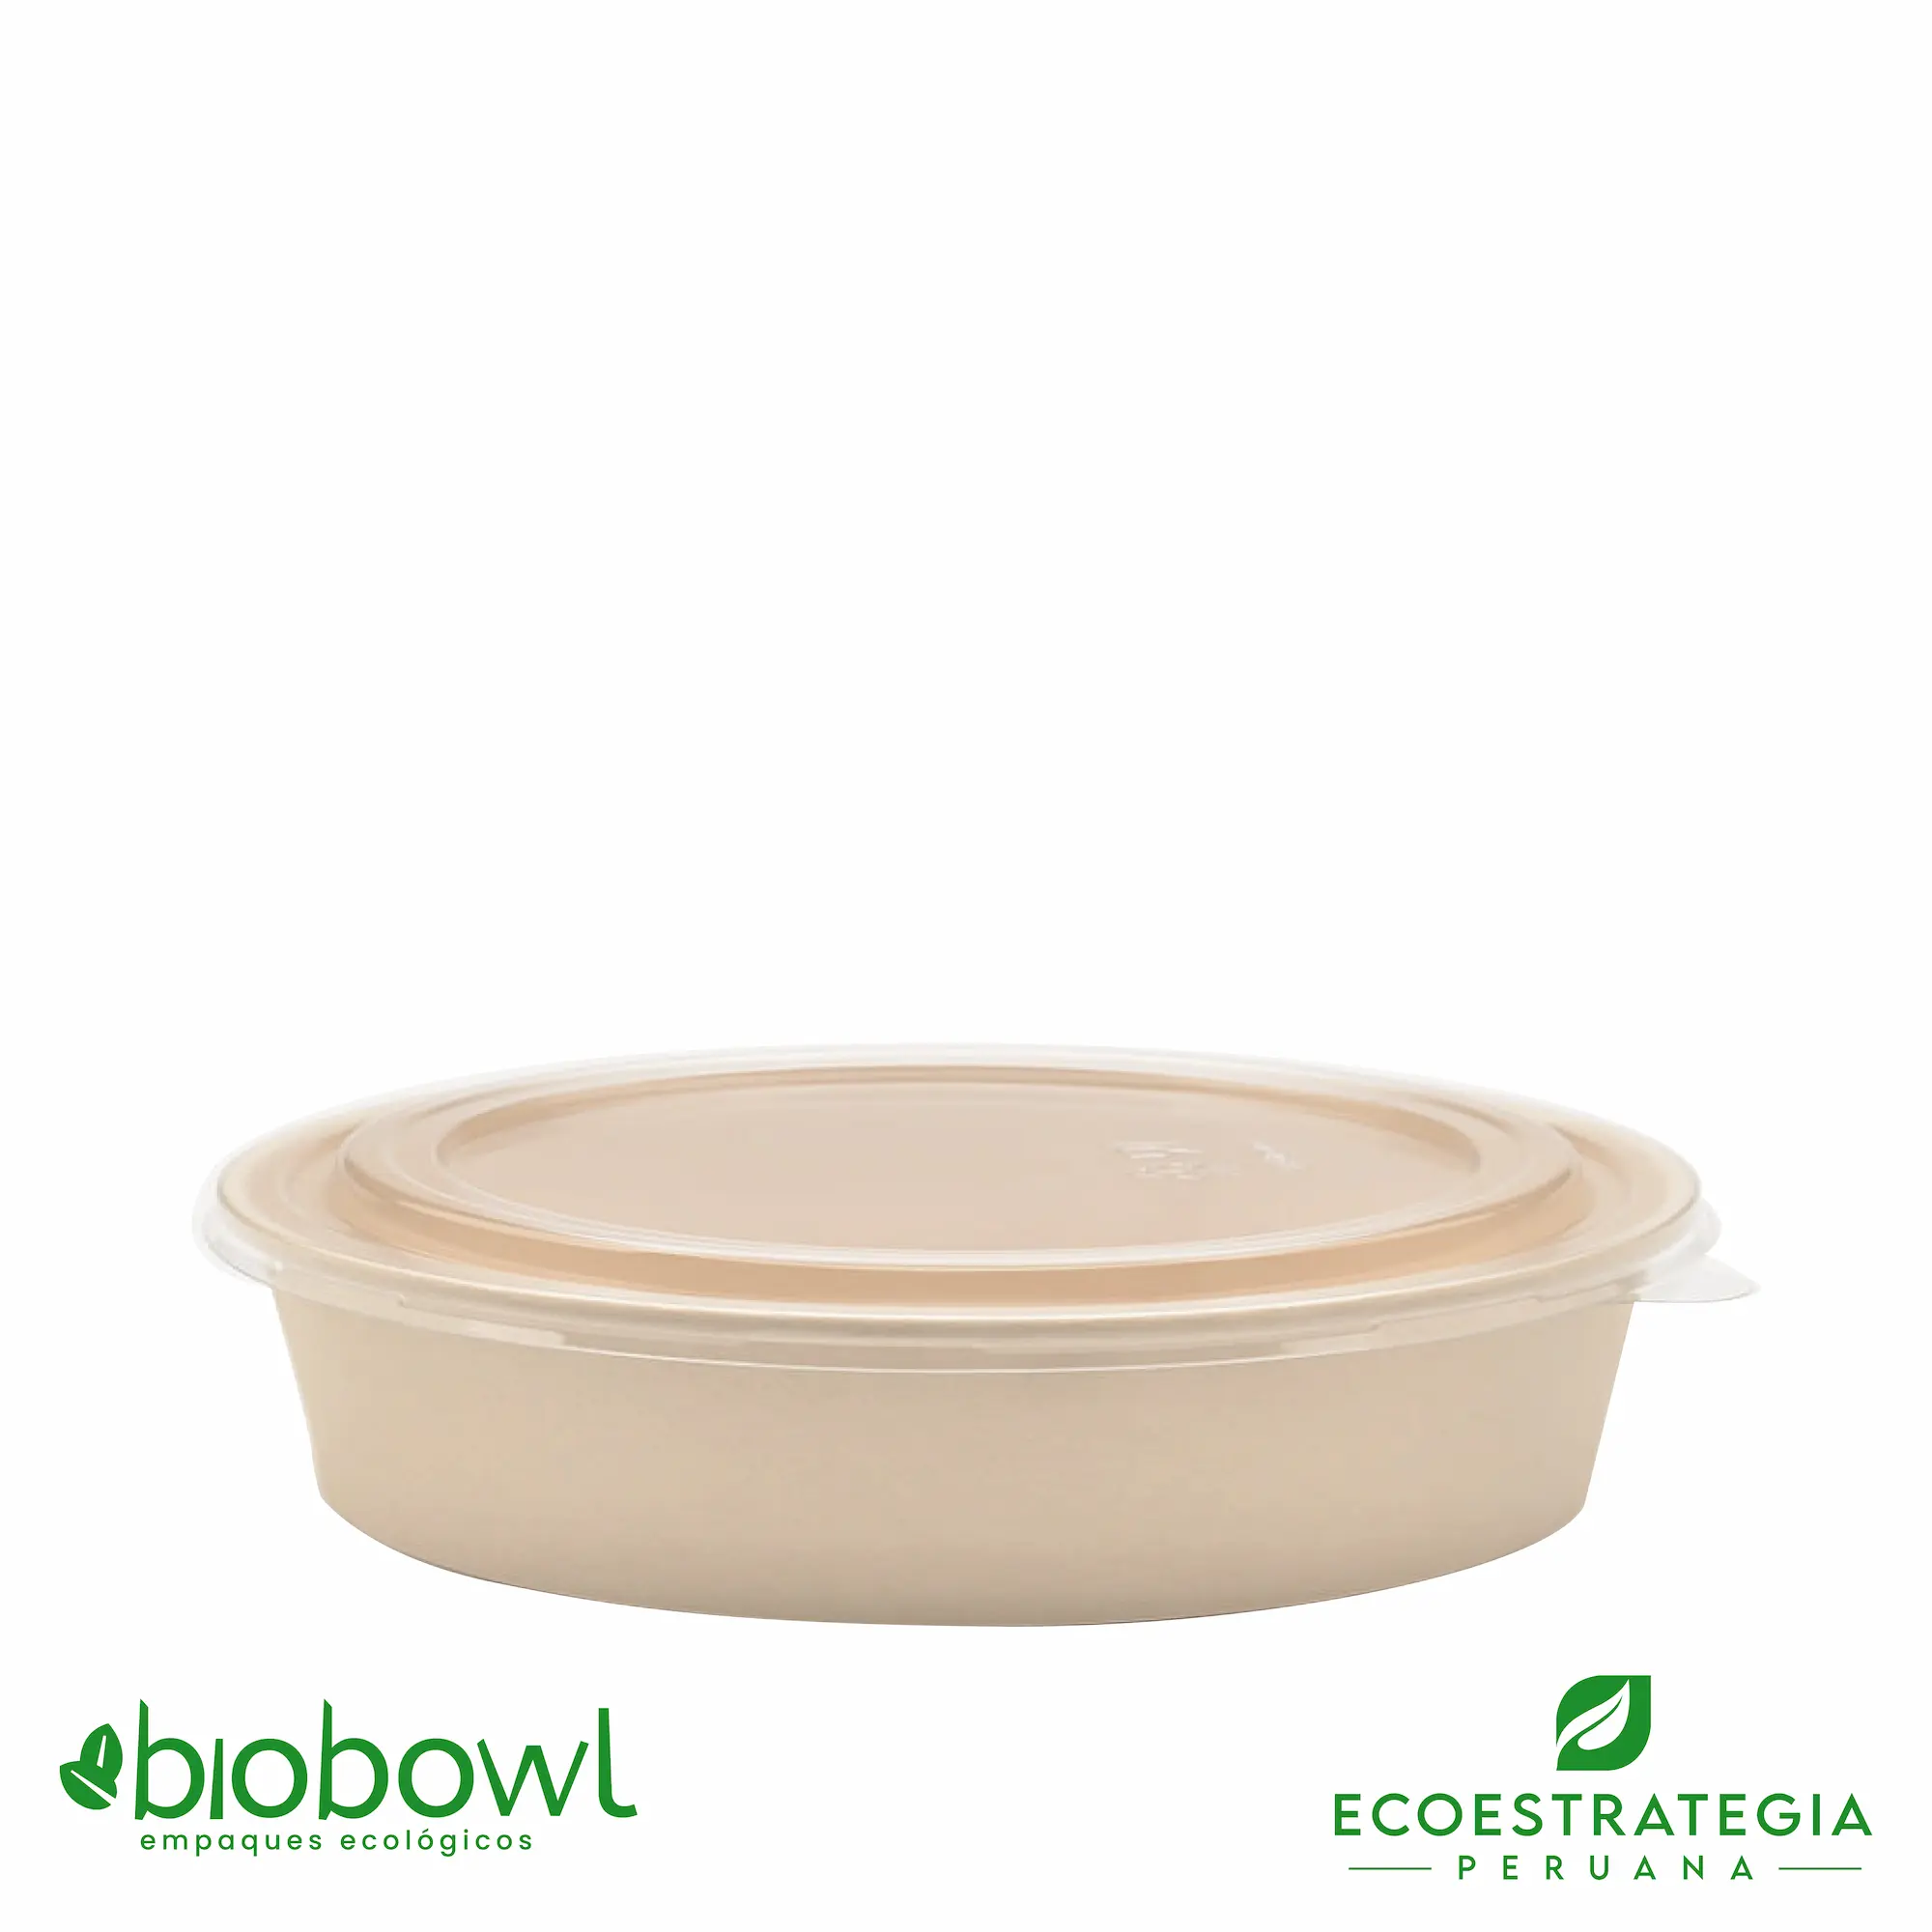 Este envase biodegradable es un bowl 500ml hecho de bambú. Envases descartables con gramaje ideal, cotiza tus vasos para helados, táper para sopa, bowls salad